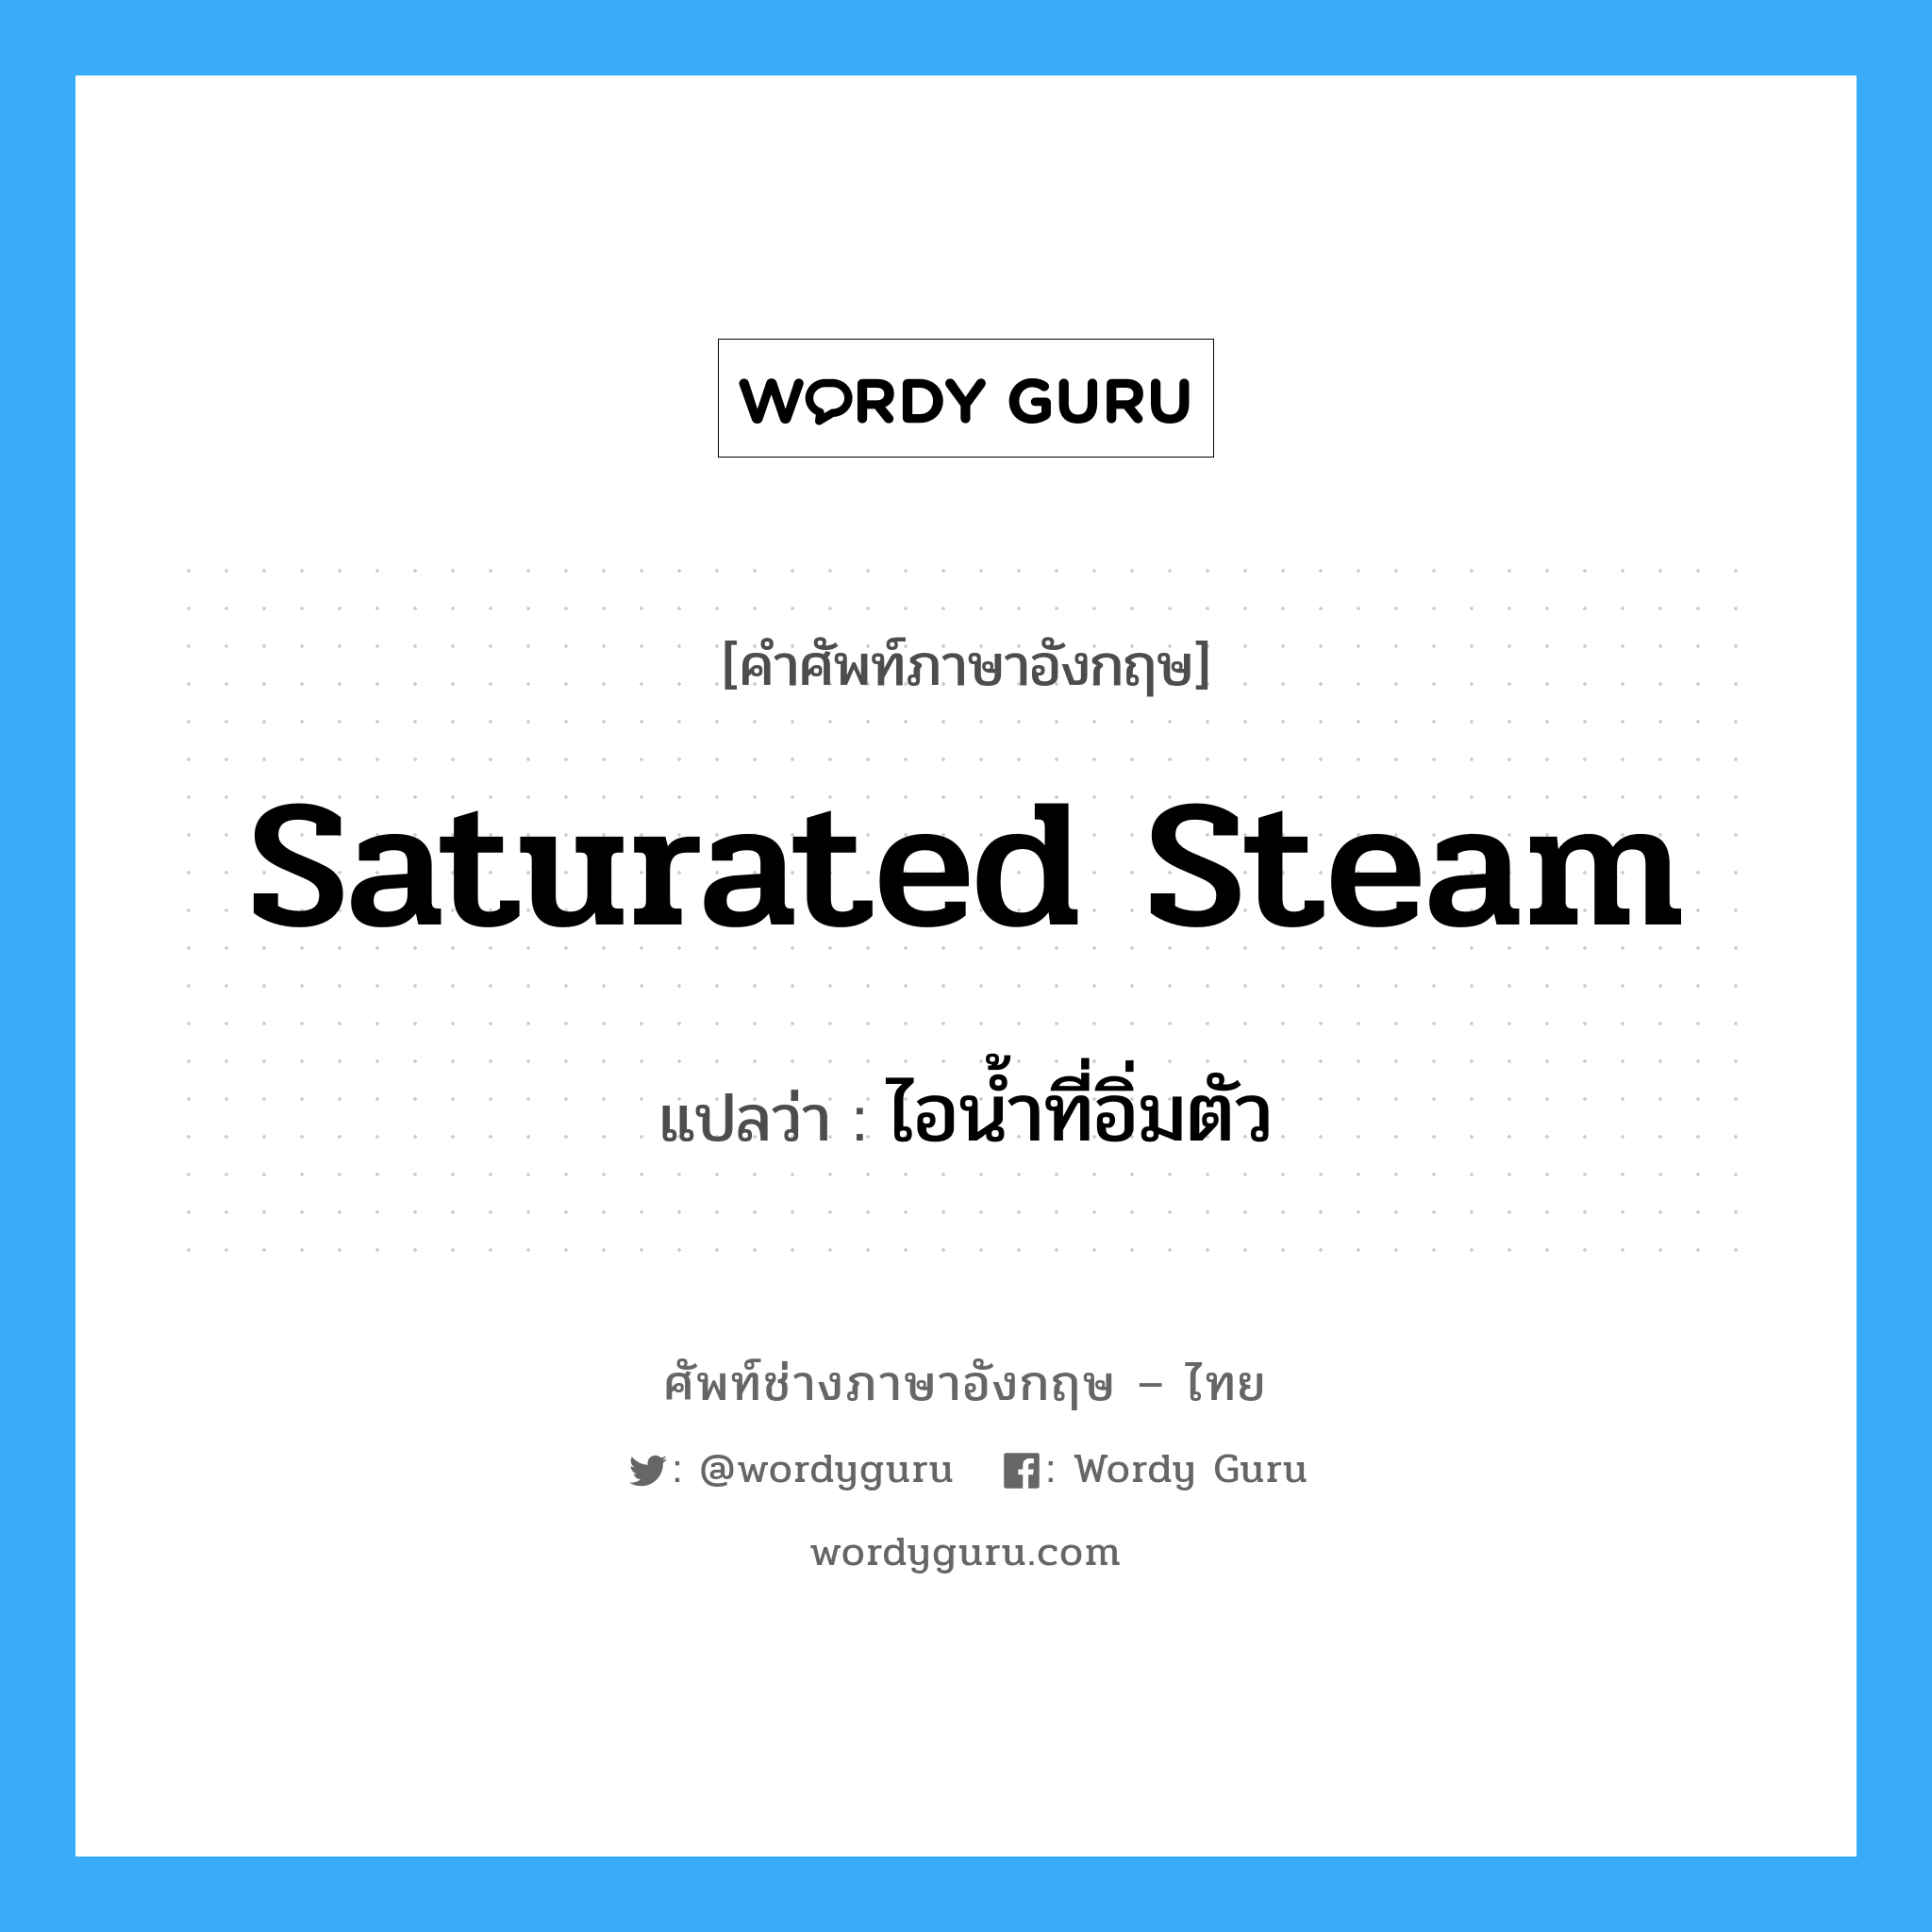 saturated steam แปลว่า?, คำศัพท์ช่างภาษาอังกฤษ - ไทย saturated steam คำศัพท์ภาษาอังกฤษ saturated steam แปลว่า ไอน้ำที่อิ่มตัว